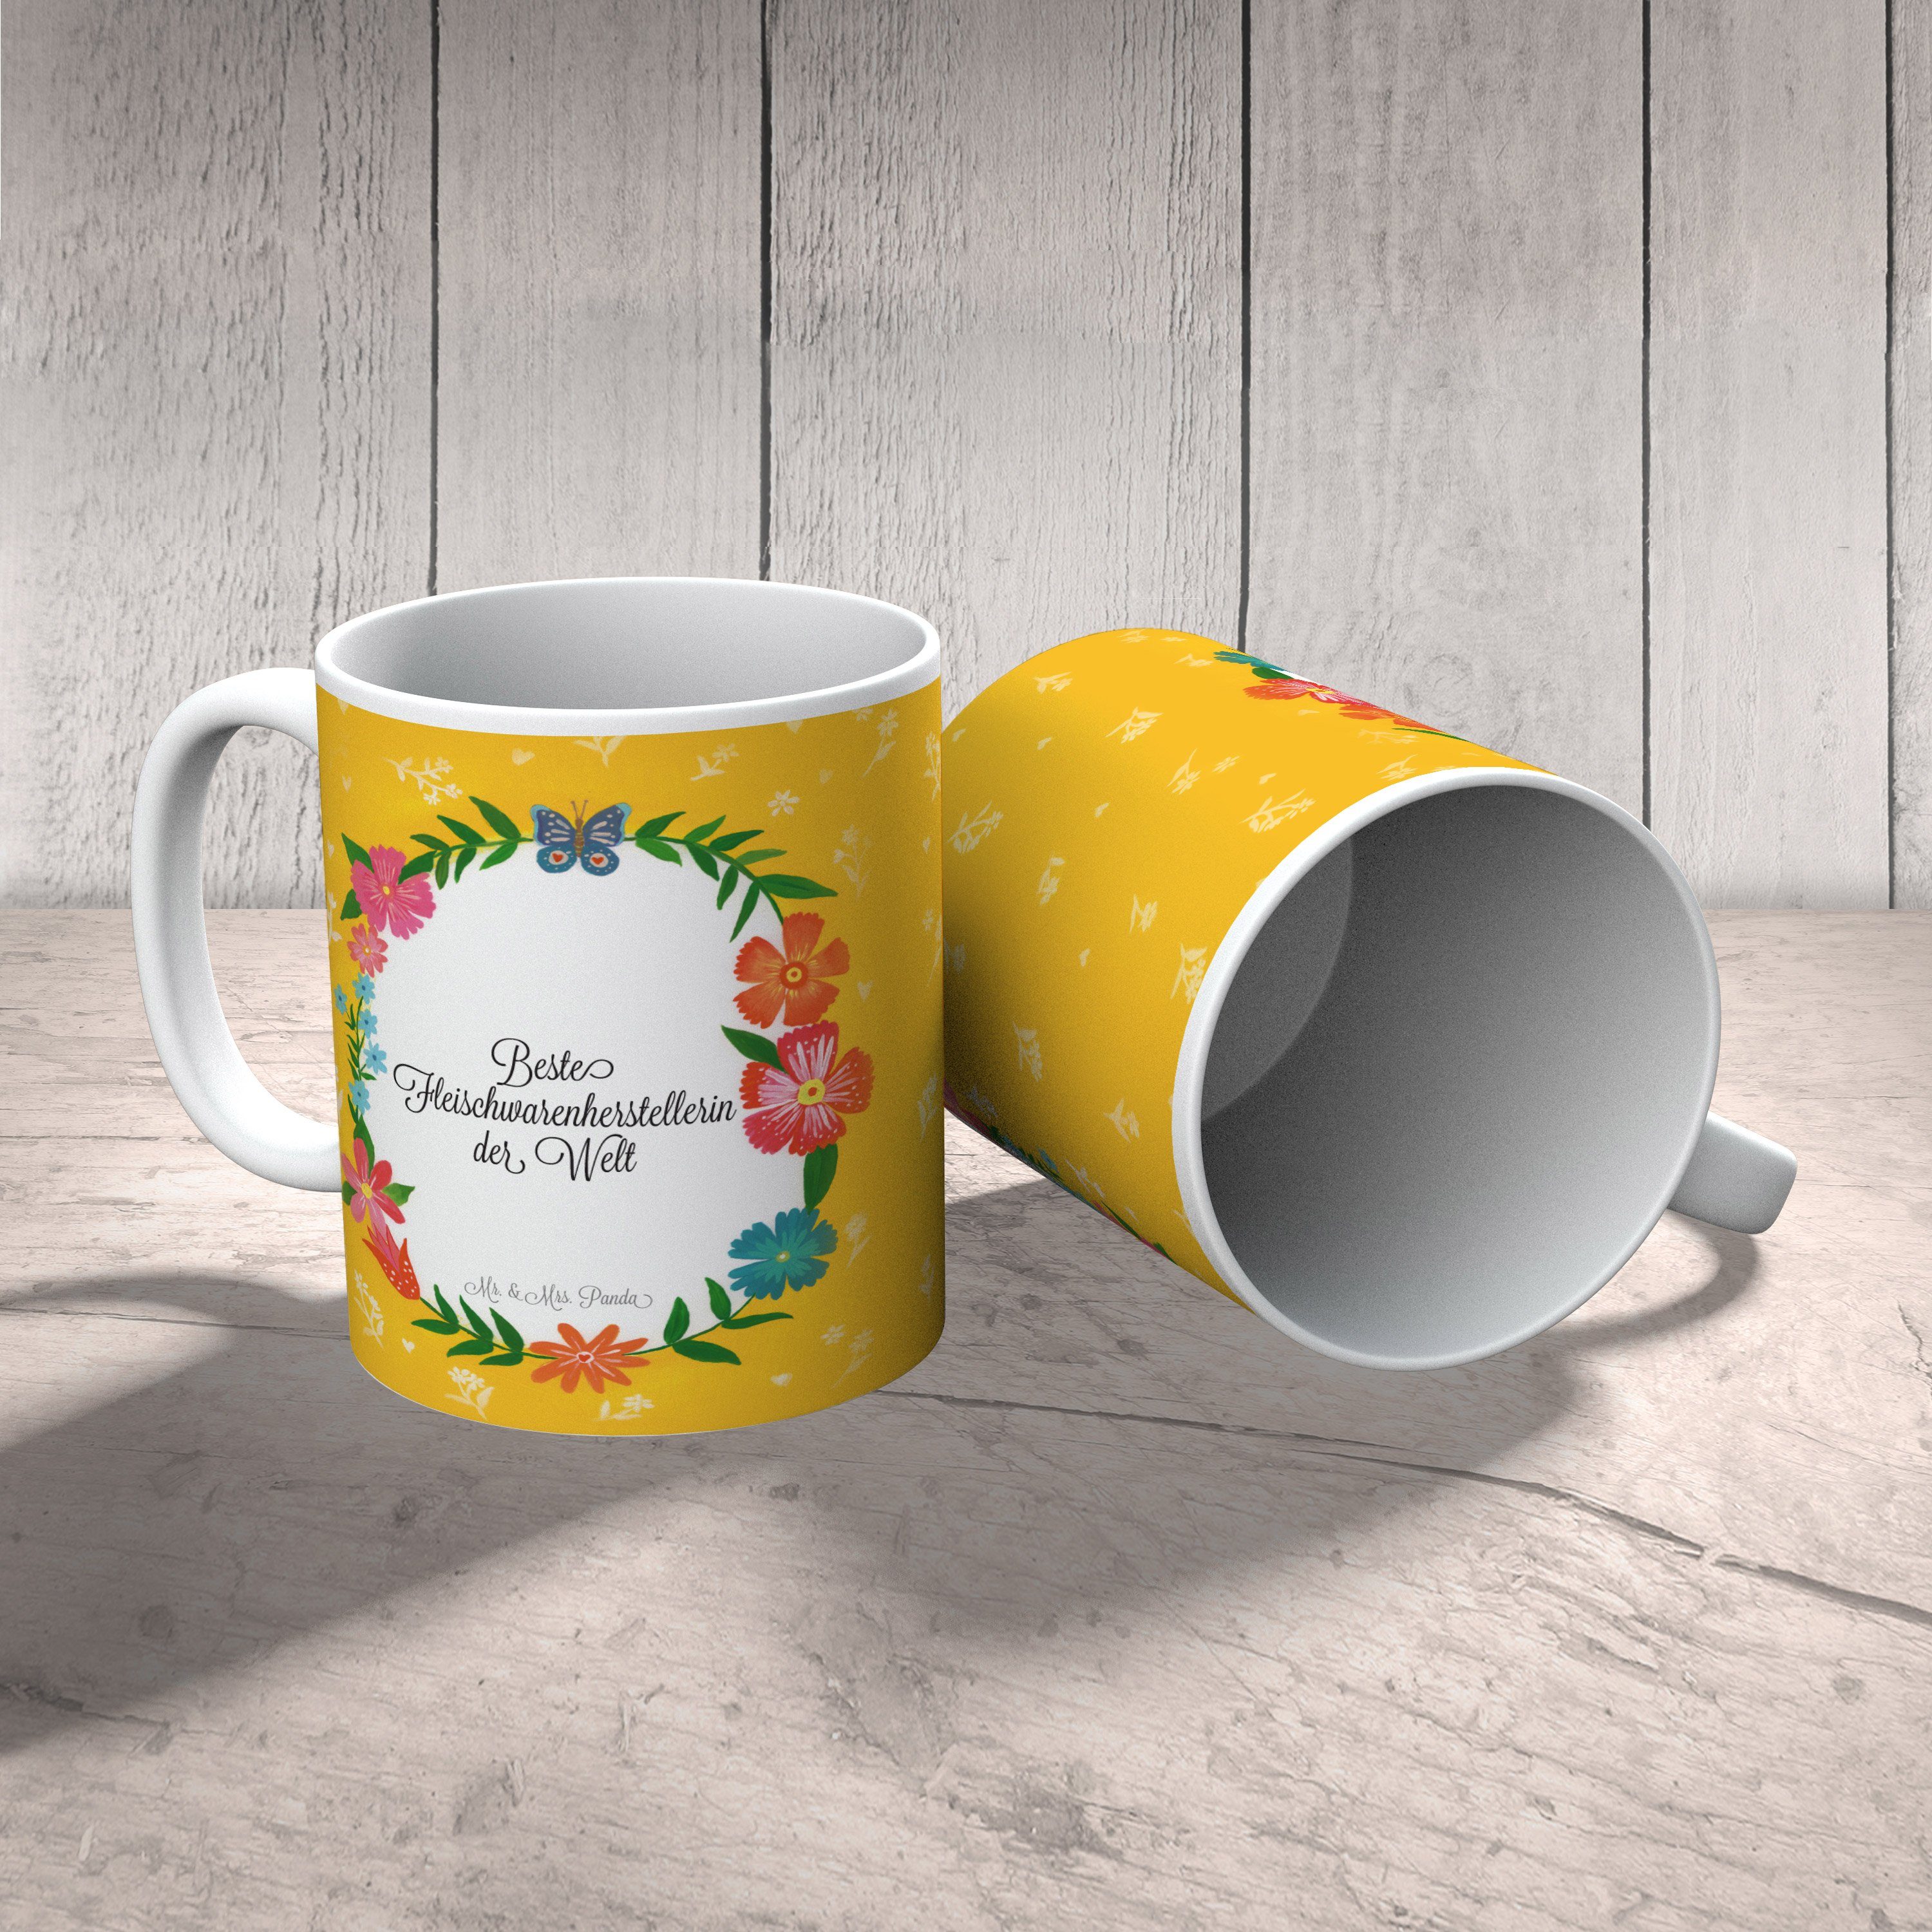 Mr. & Mrs. Panda Tasse Tasse, Motive, Fleischwarenherstellerin Kaffeetasse, Tasse Keramik Geschenk, 